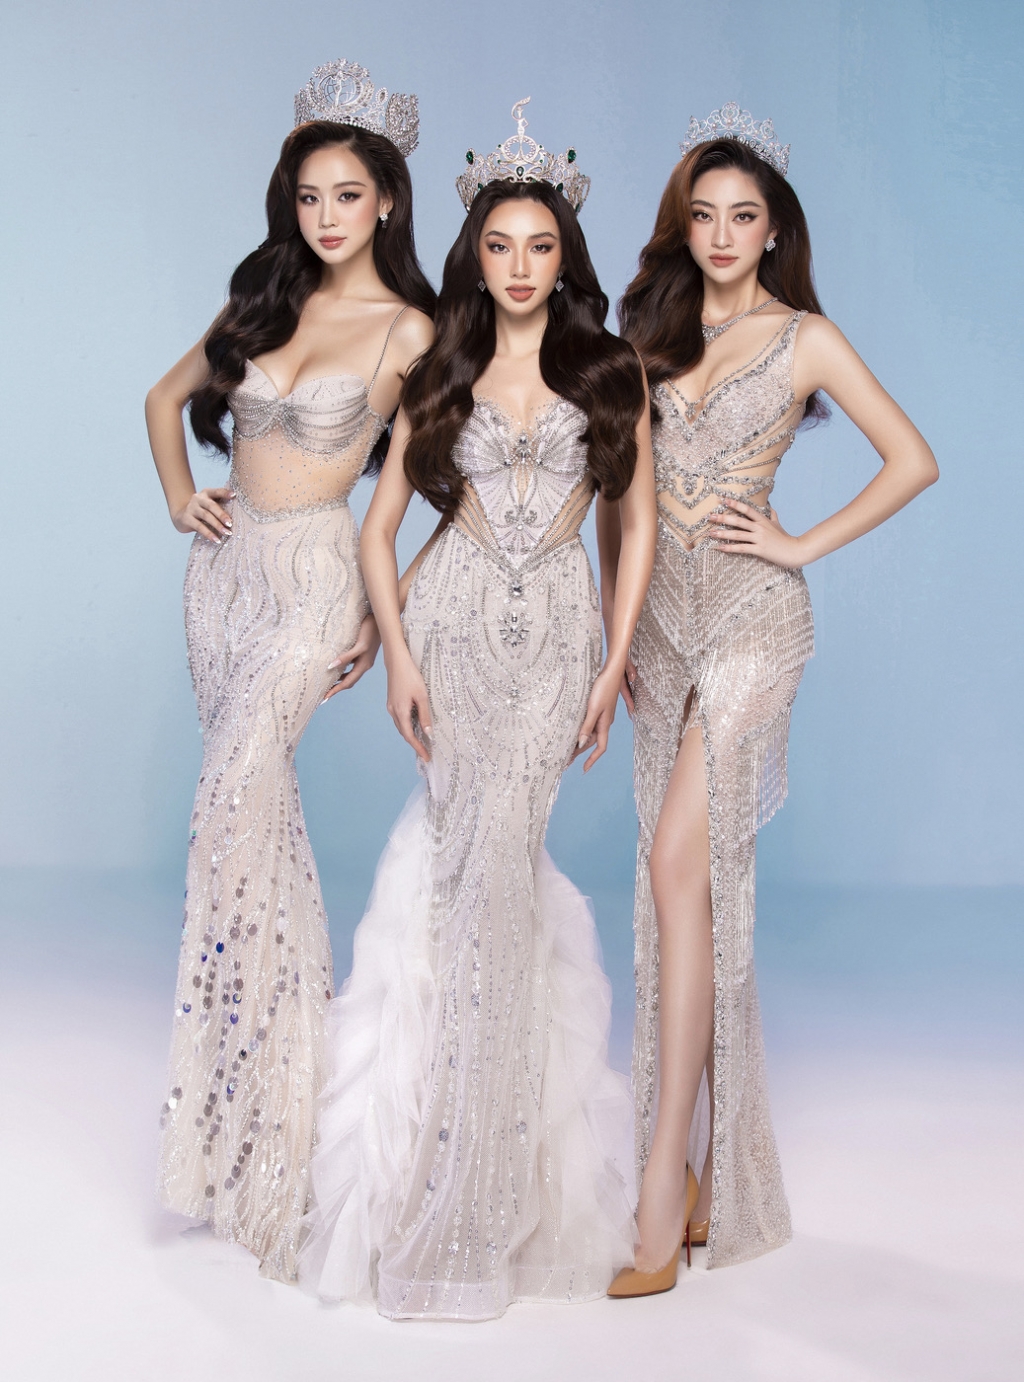 Hoa hậu Thùy Tiên, Lương Thùy Linh, Bảo Ngọc đọ sắc trong trang phục 3 miền